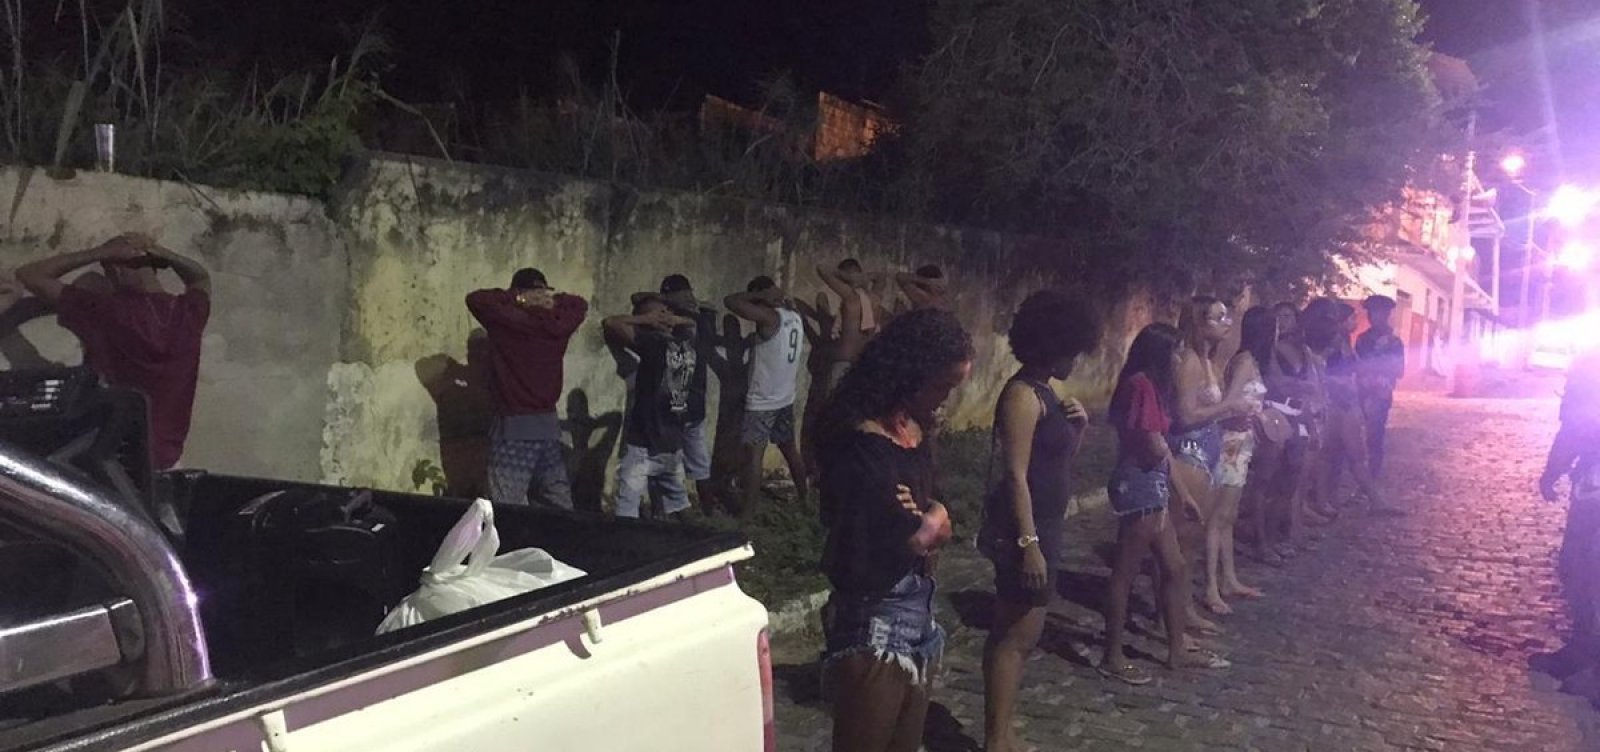 [Polícia encontra caminhonete com 16 pessoas a caminho de ‘Covidfest’ em Ipiaú]